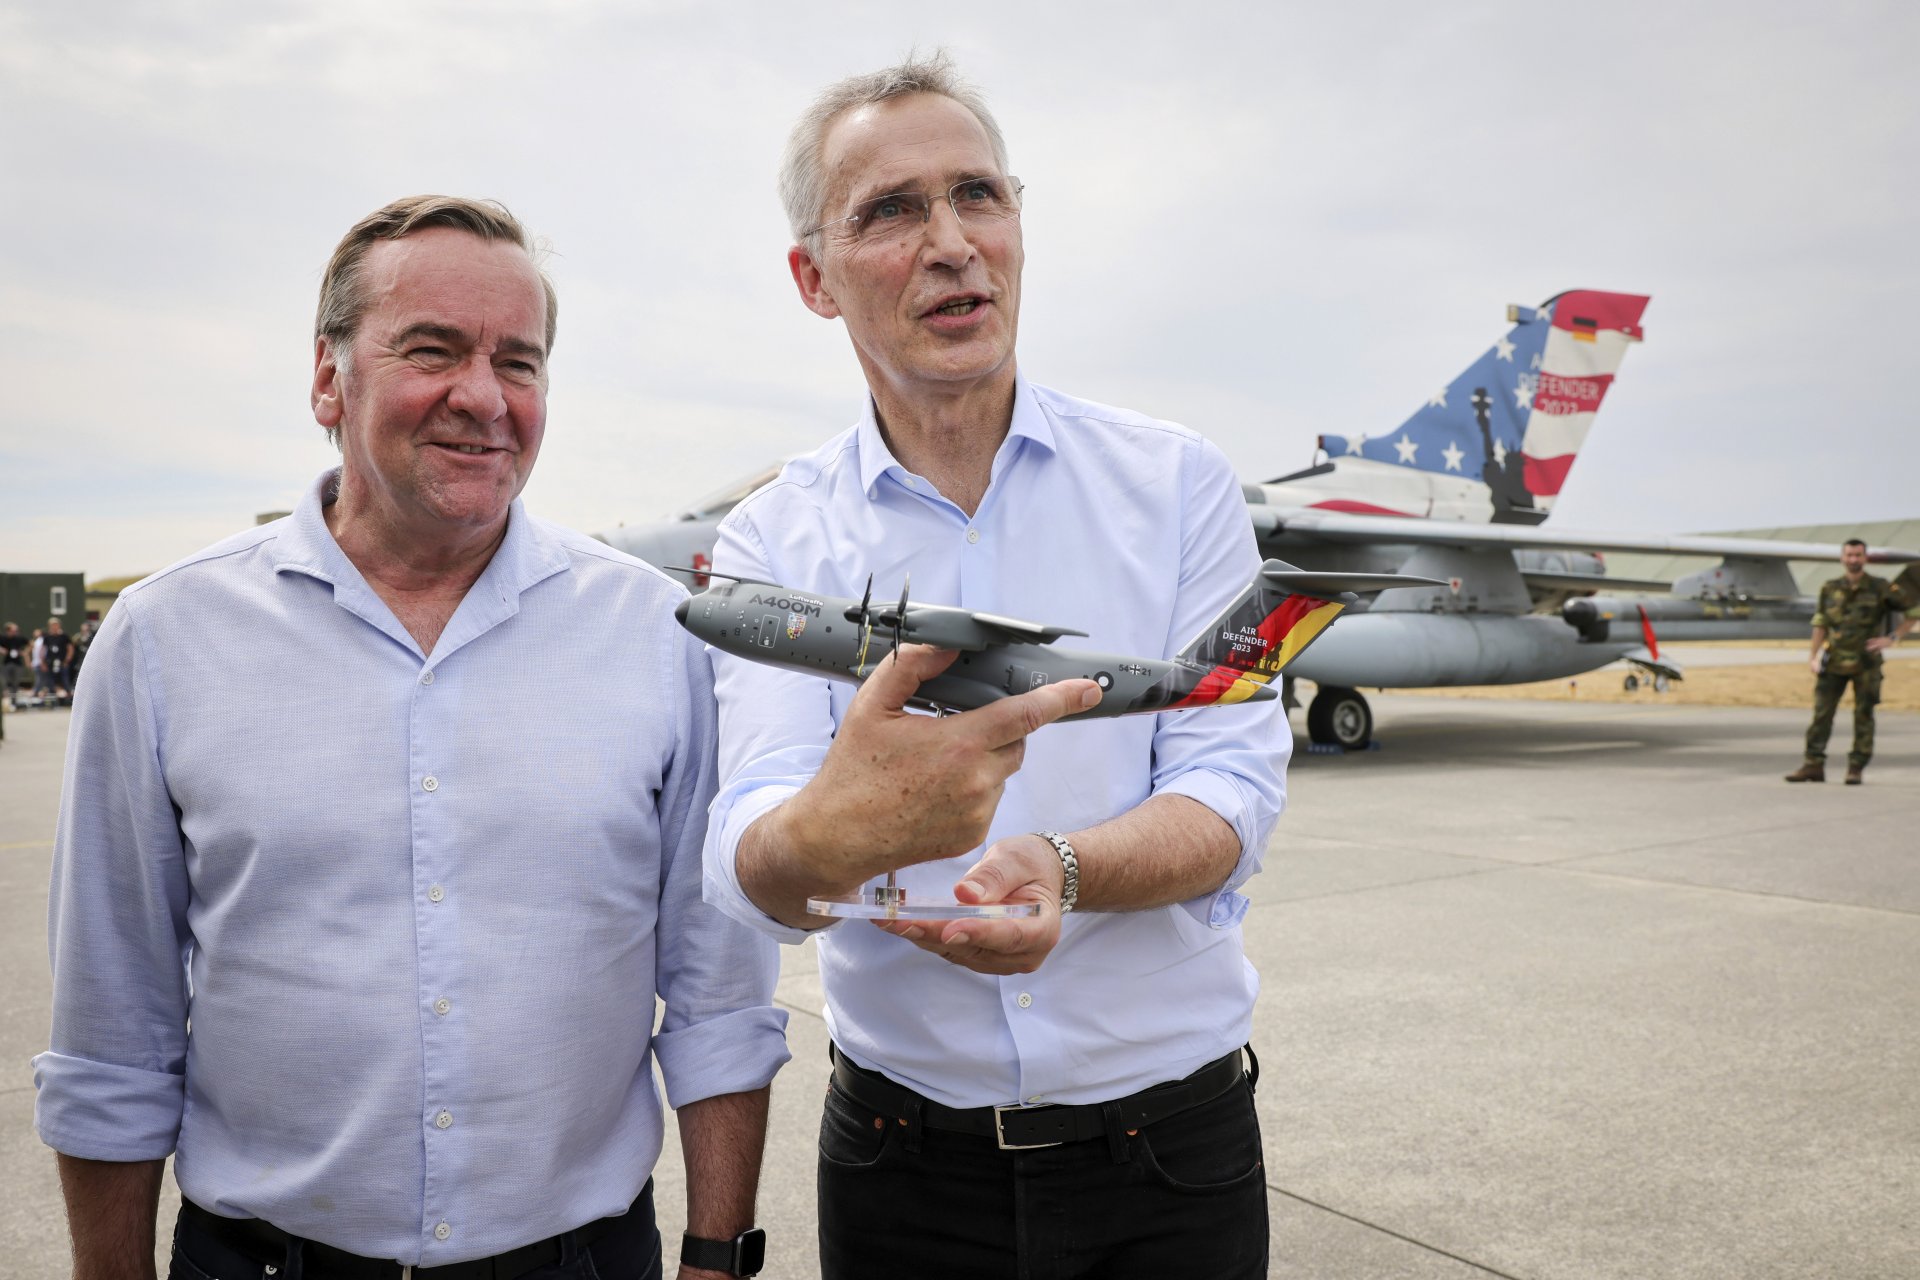 Германският министър на отбраната Борис Писториус (вляво) и генералният секретар на НАТО Йенс Столтенберг на международните военновъздушни учения "Еър дифендър 2023" (Air Defender 2023) във военновъздушната база в Ягел, Германия, на 20 юни миналата година